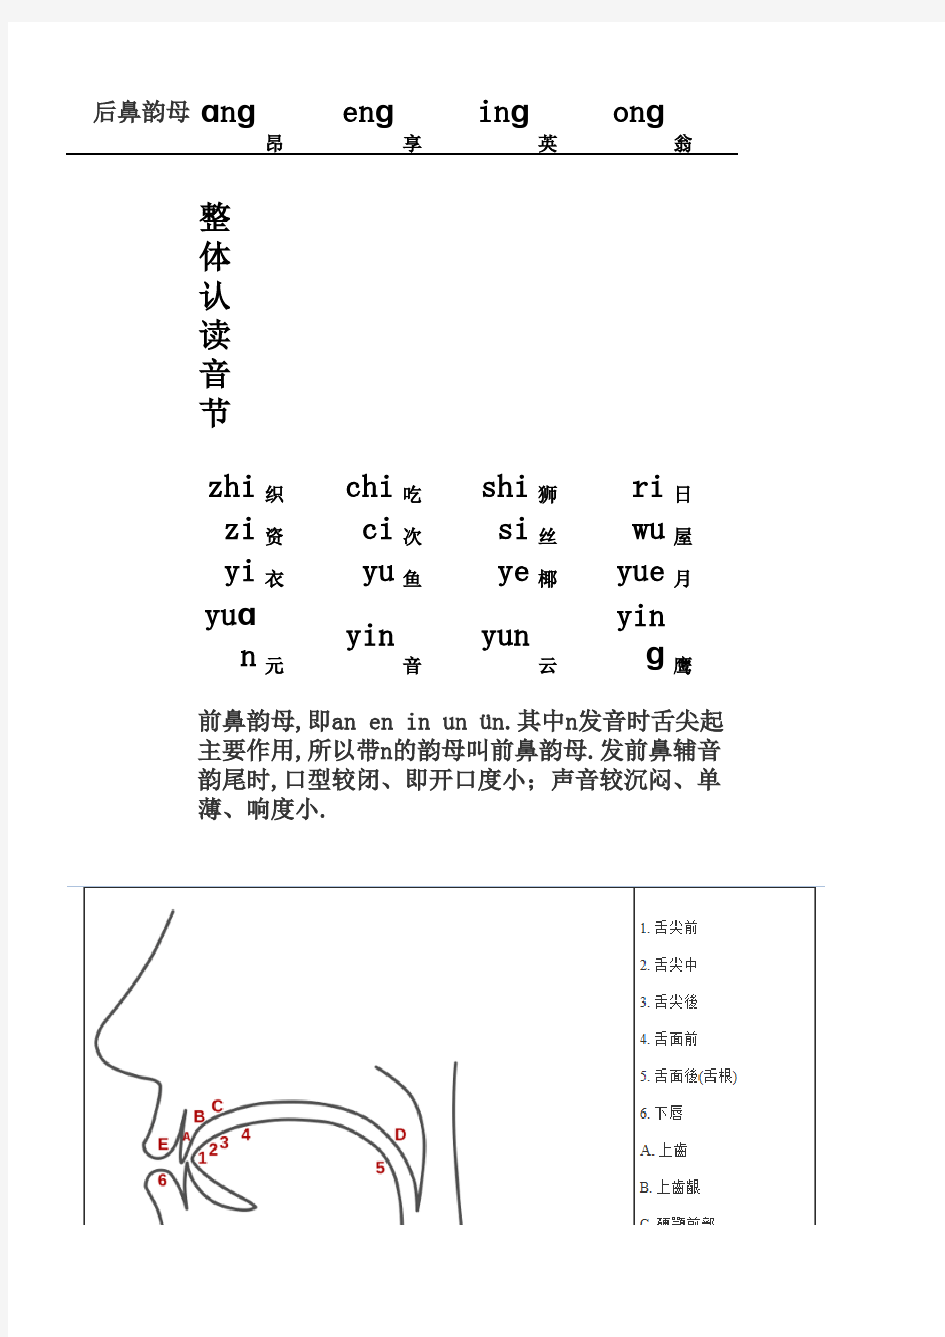 汉语拼音字母表(带辅读音)补充祥细版